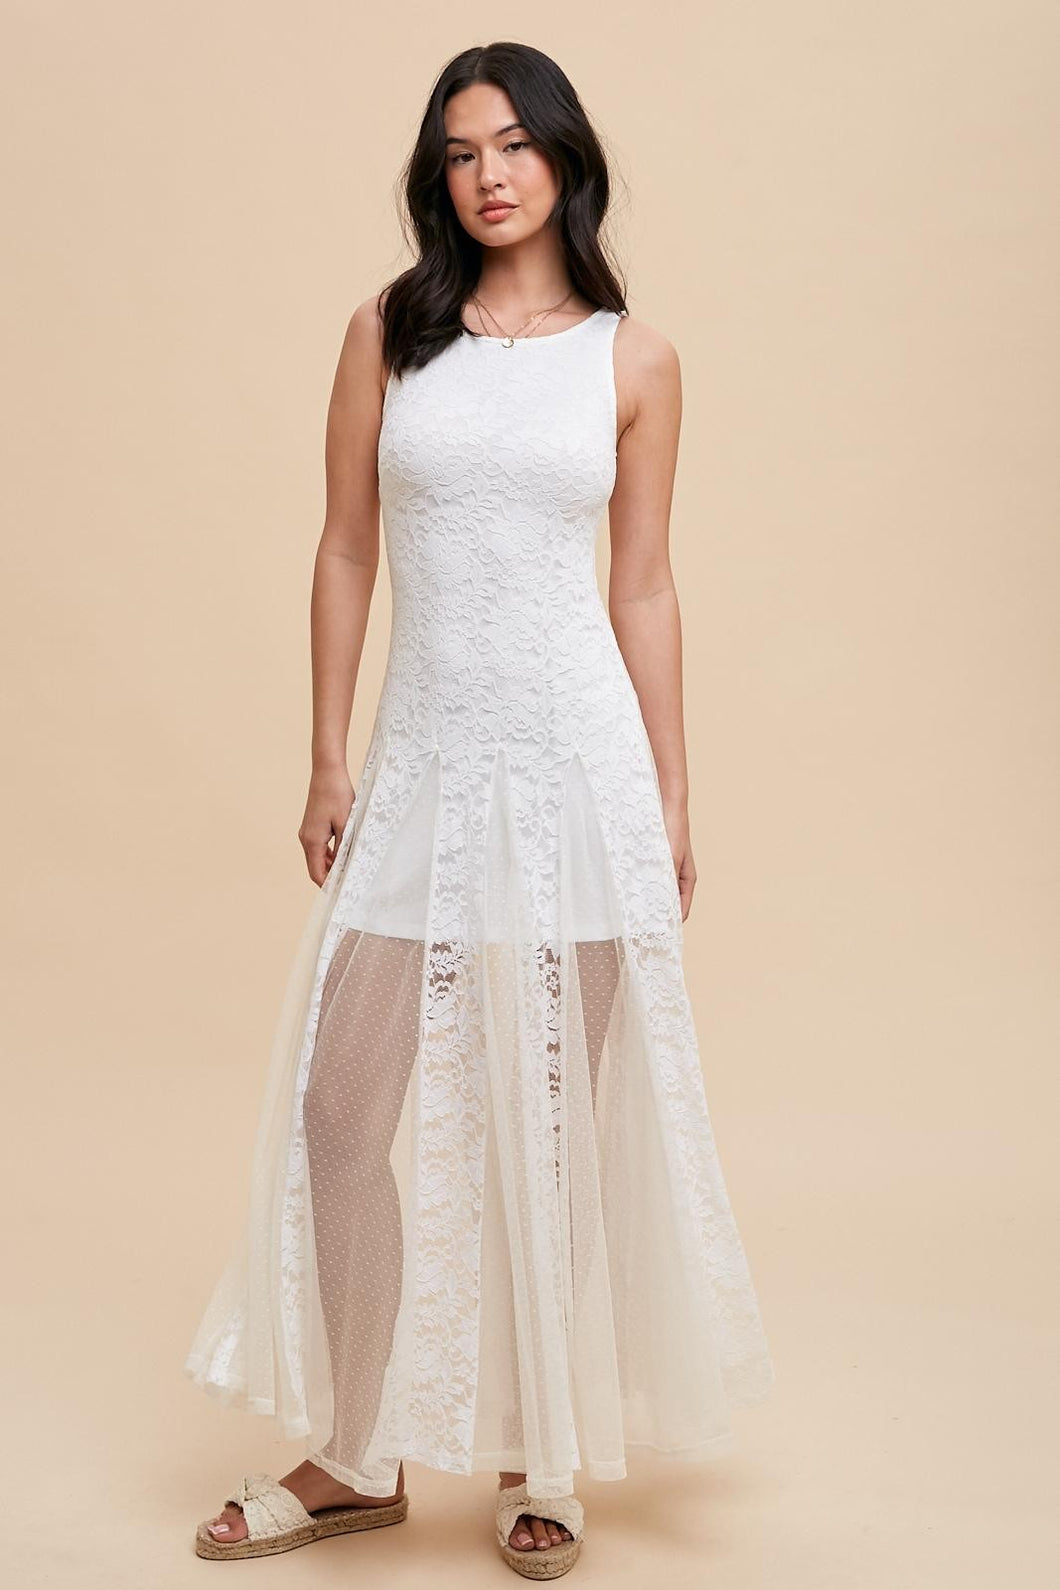 Ivory Lace Paneled Sleeveless Dress